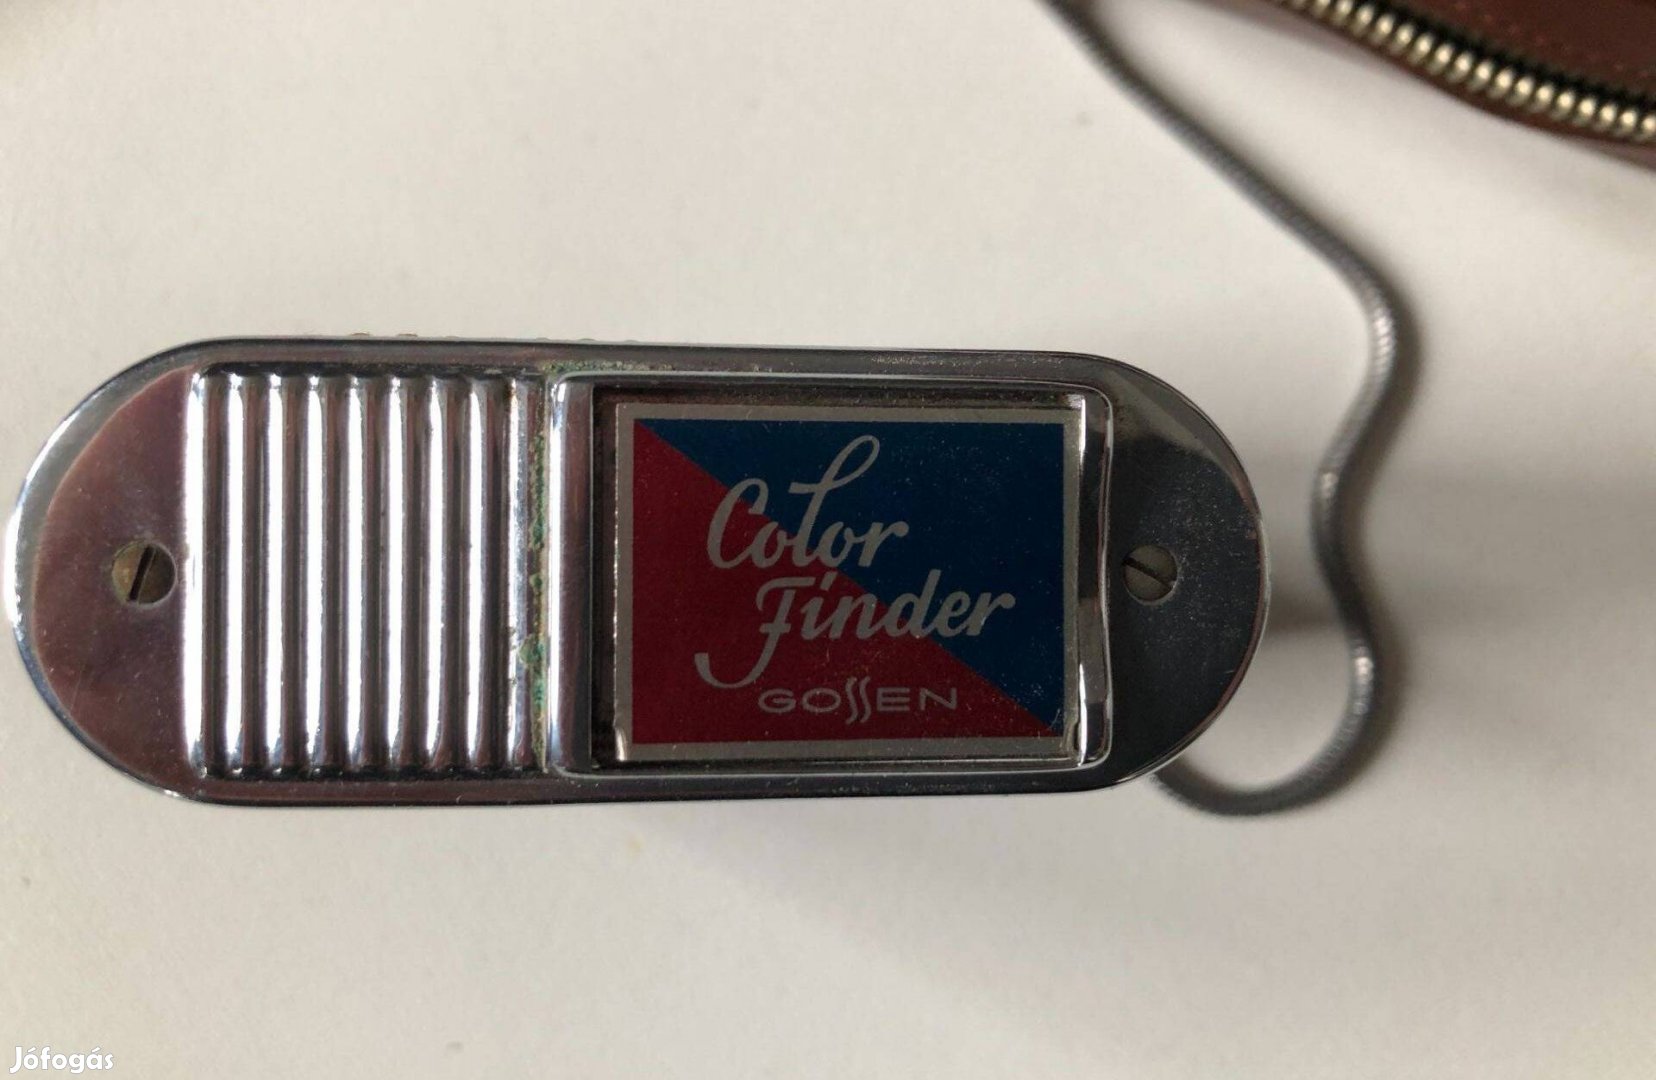 Vintage Gossen Color Finder